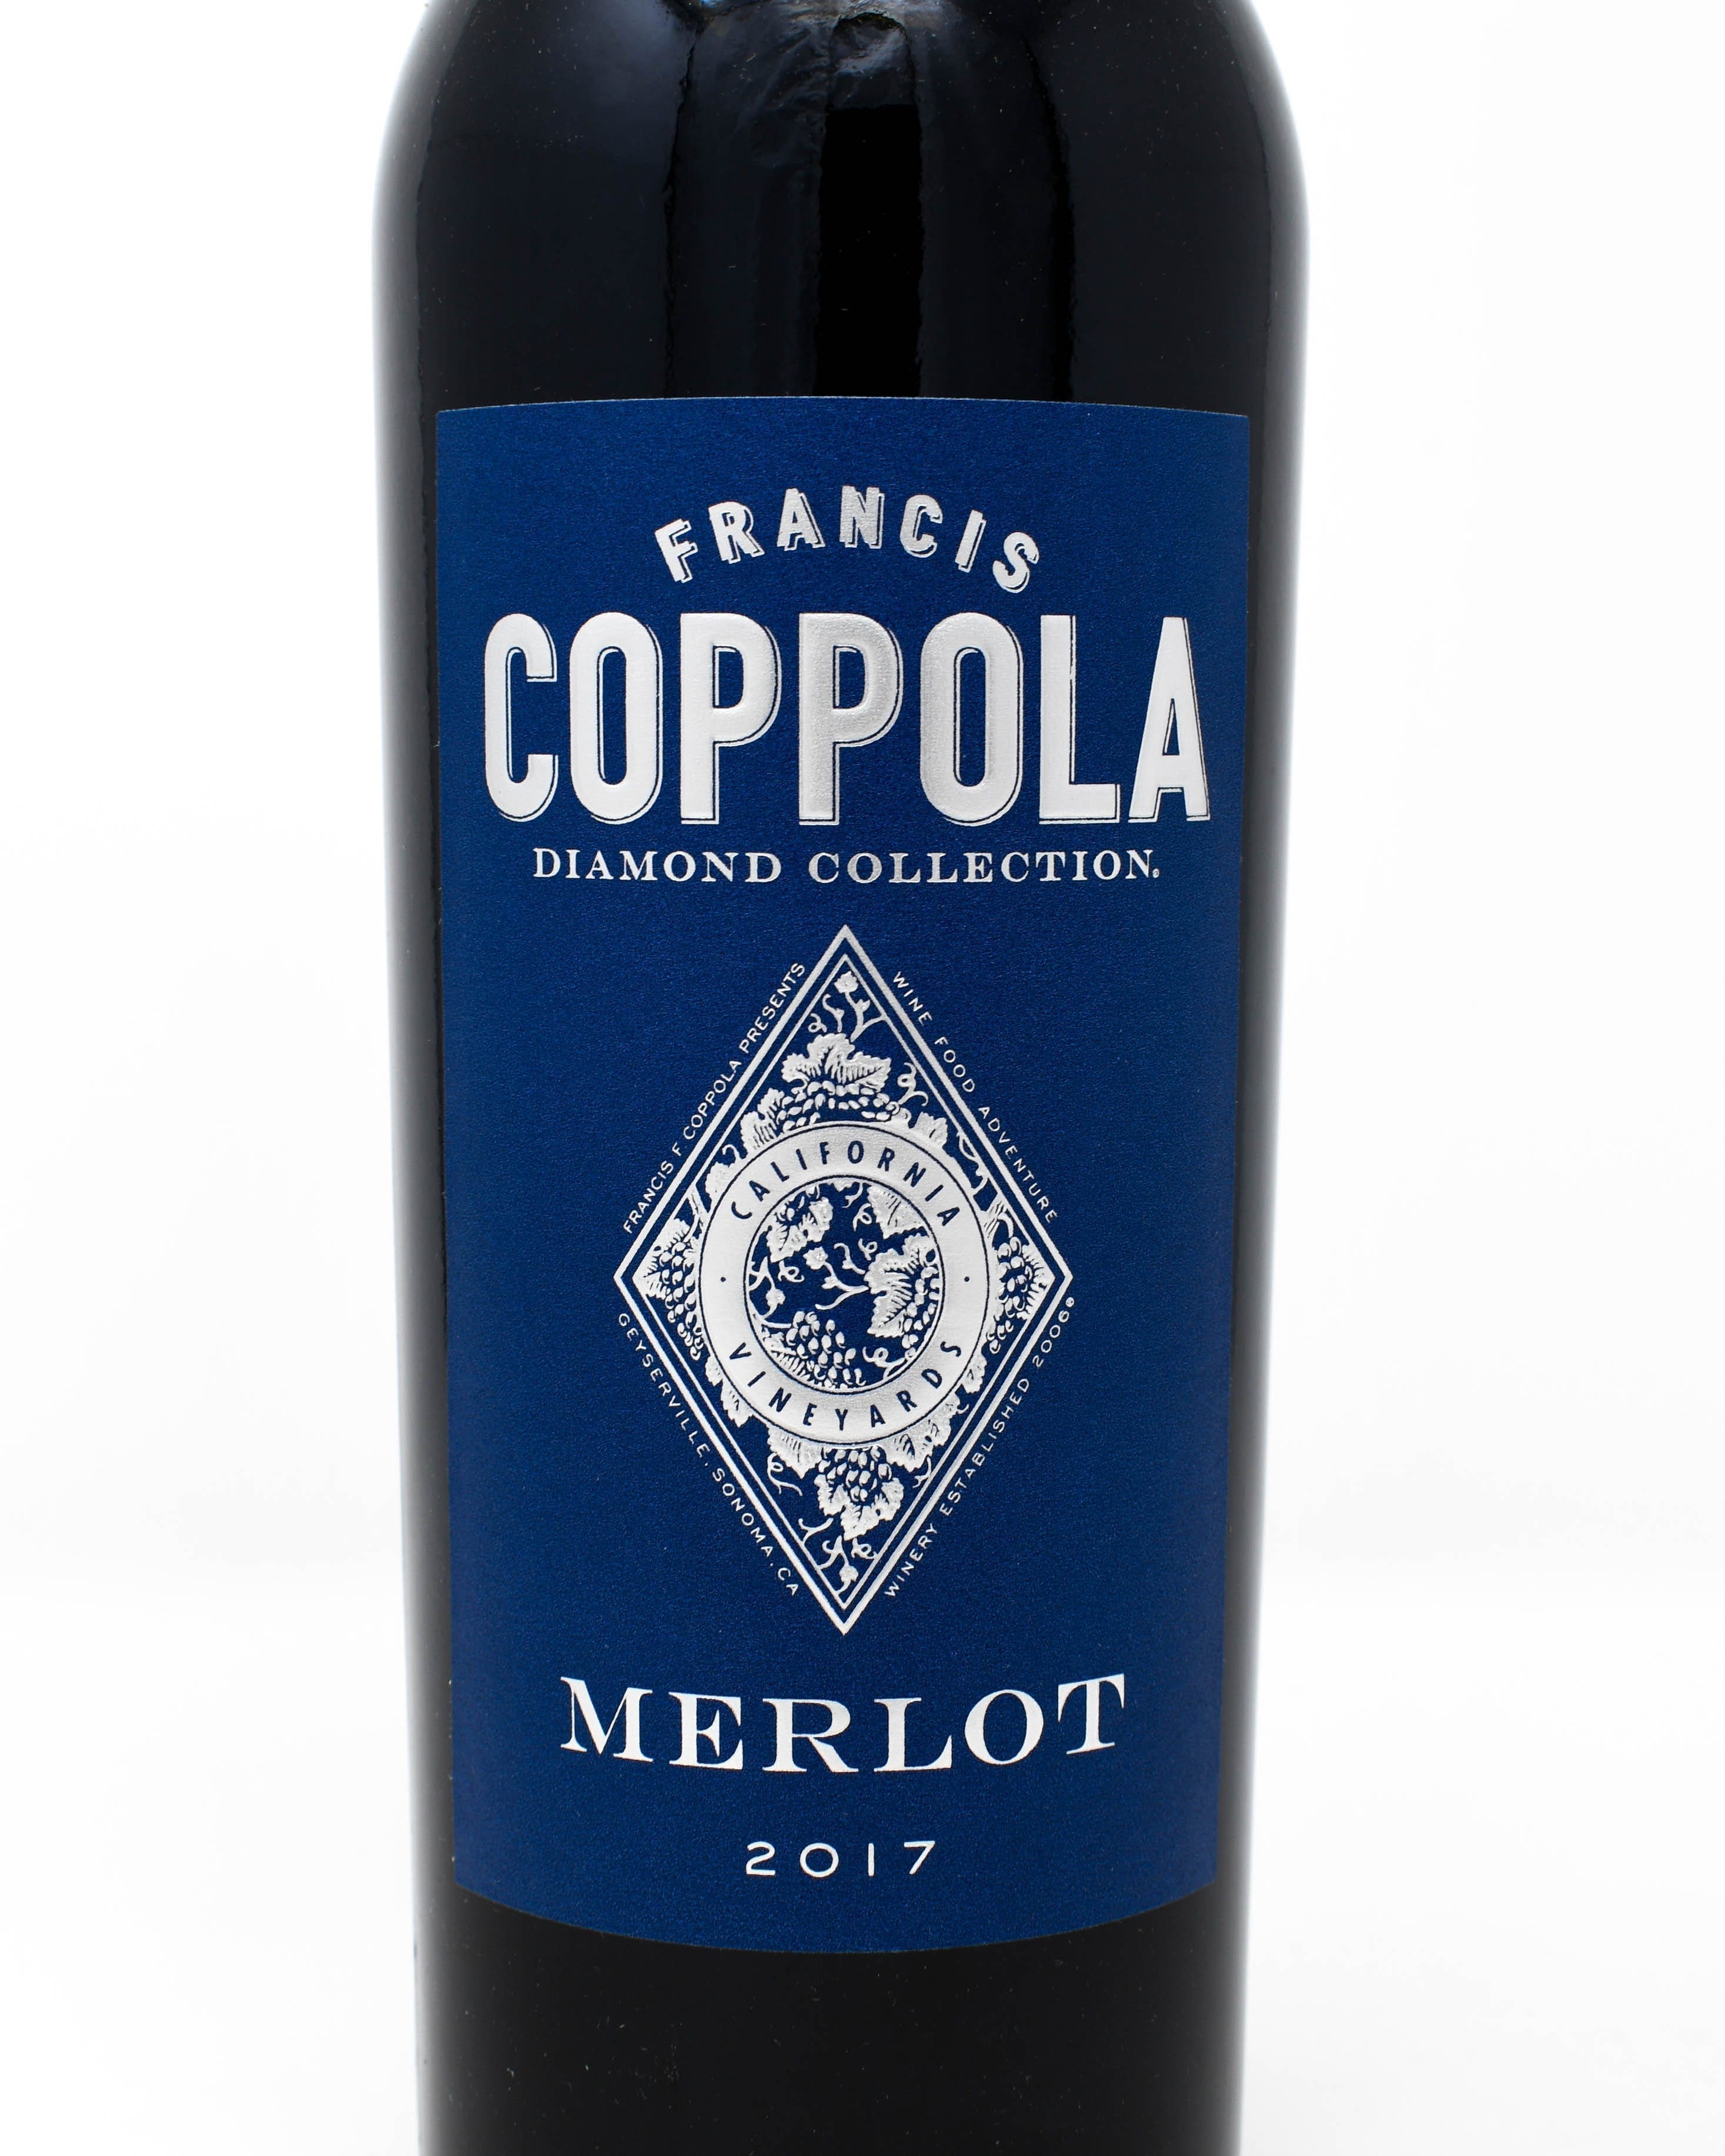 Francis coppola wine